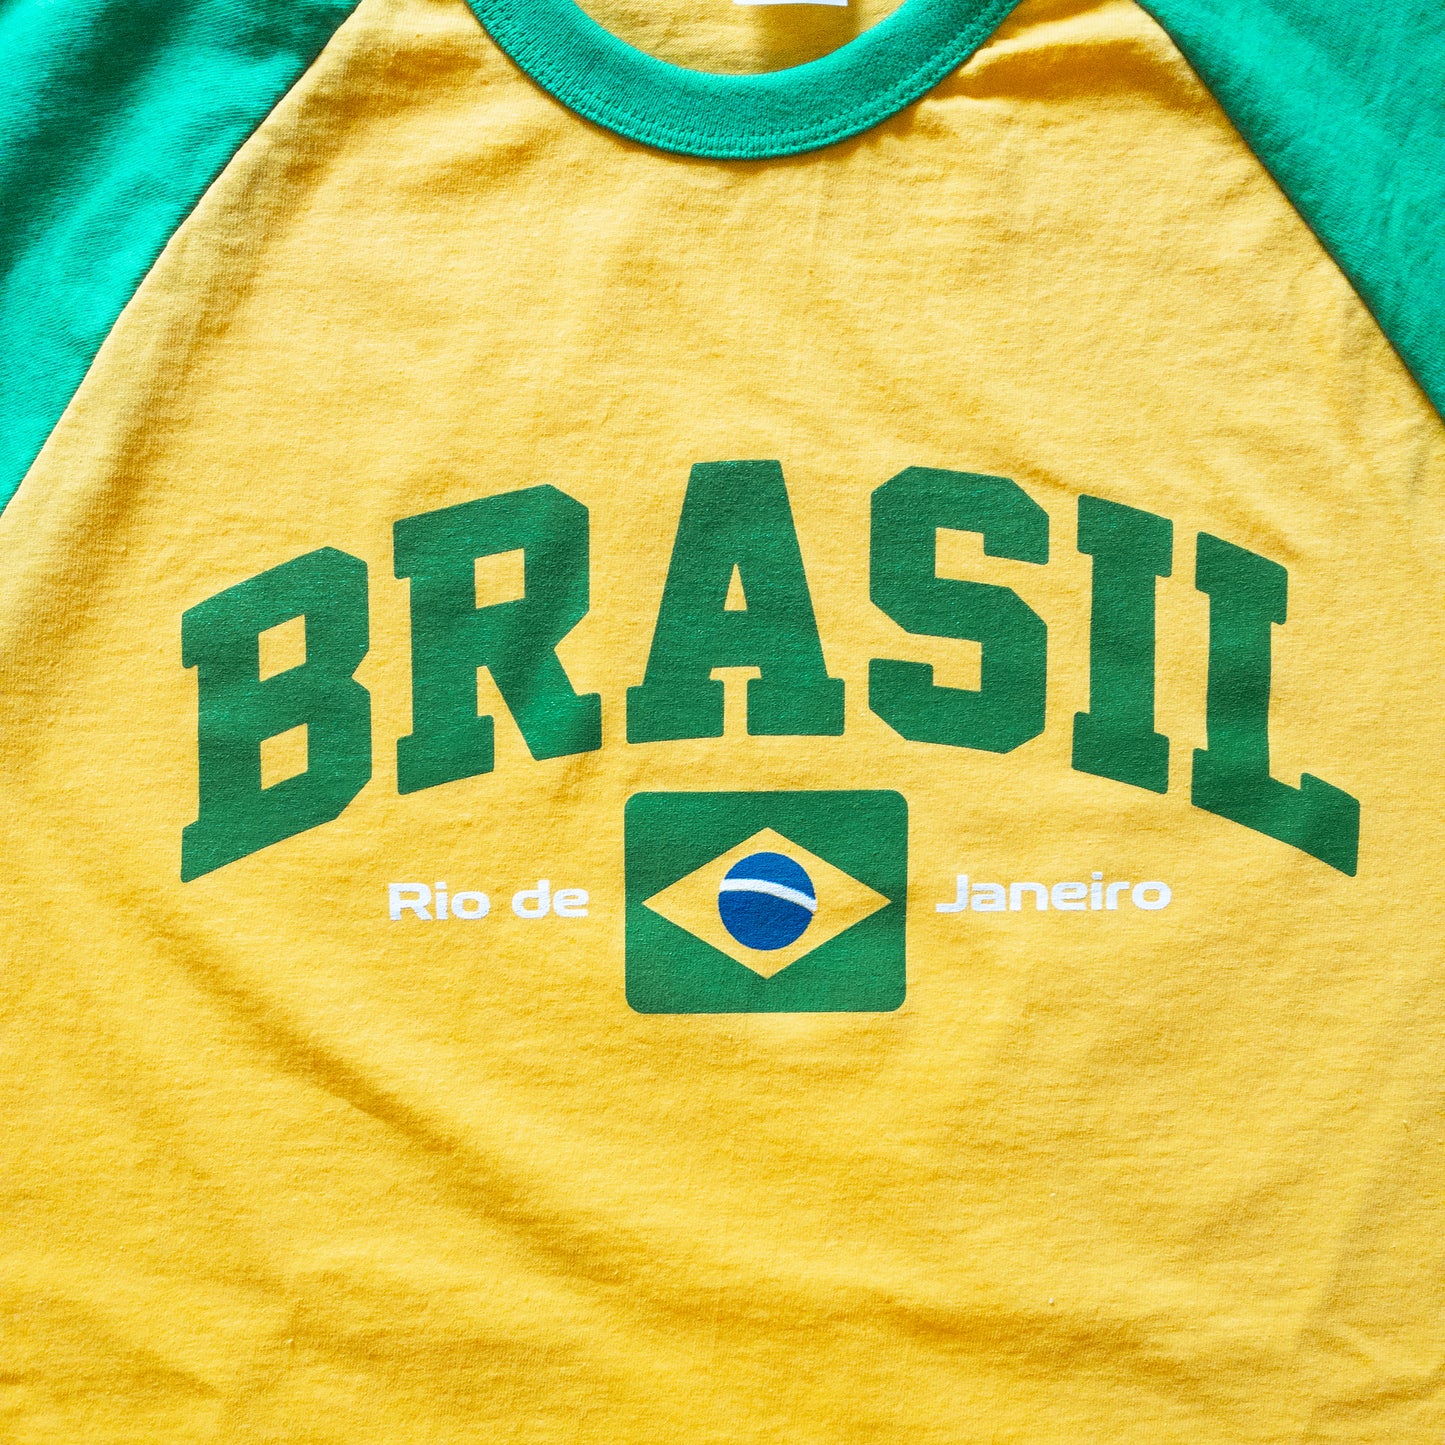 Raglan Brasil Shirt